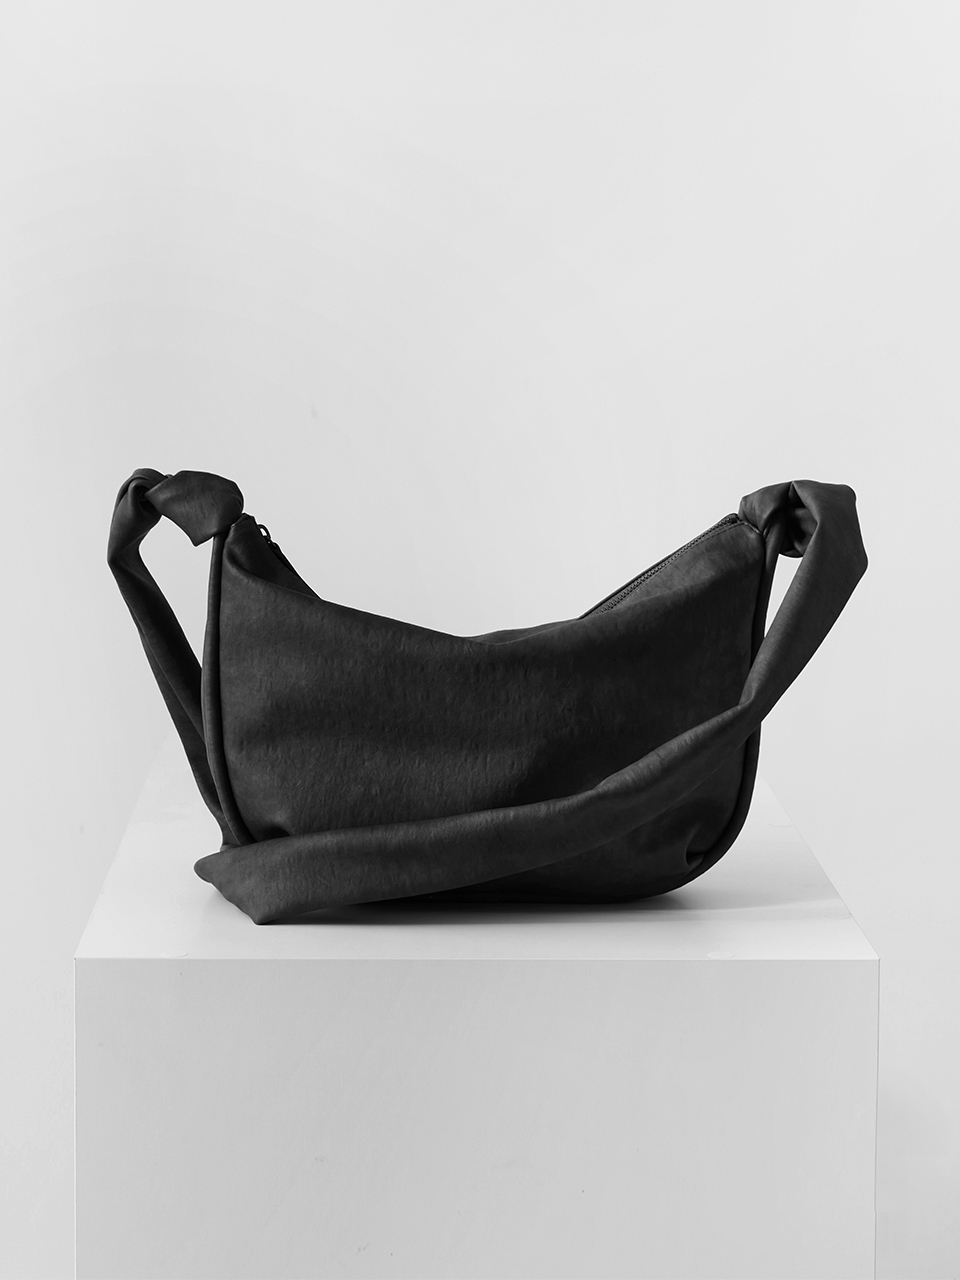 3/31 예약배송 [3차 입고] cradle bag (fog black)